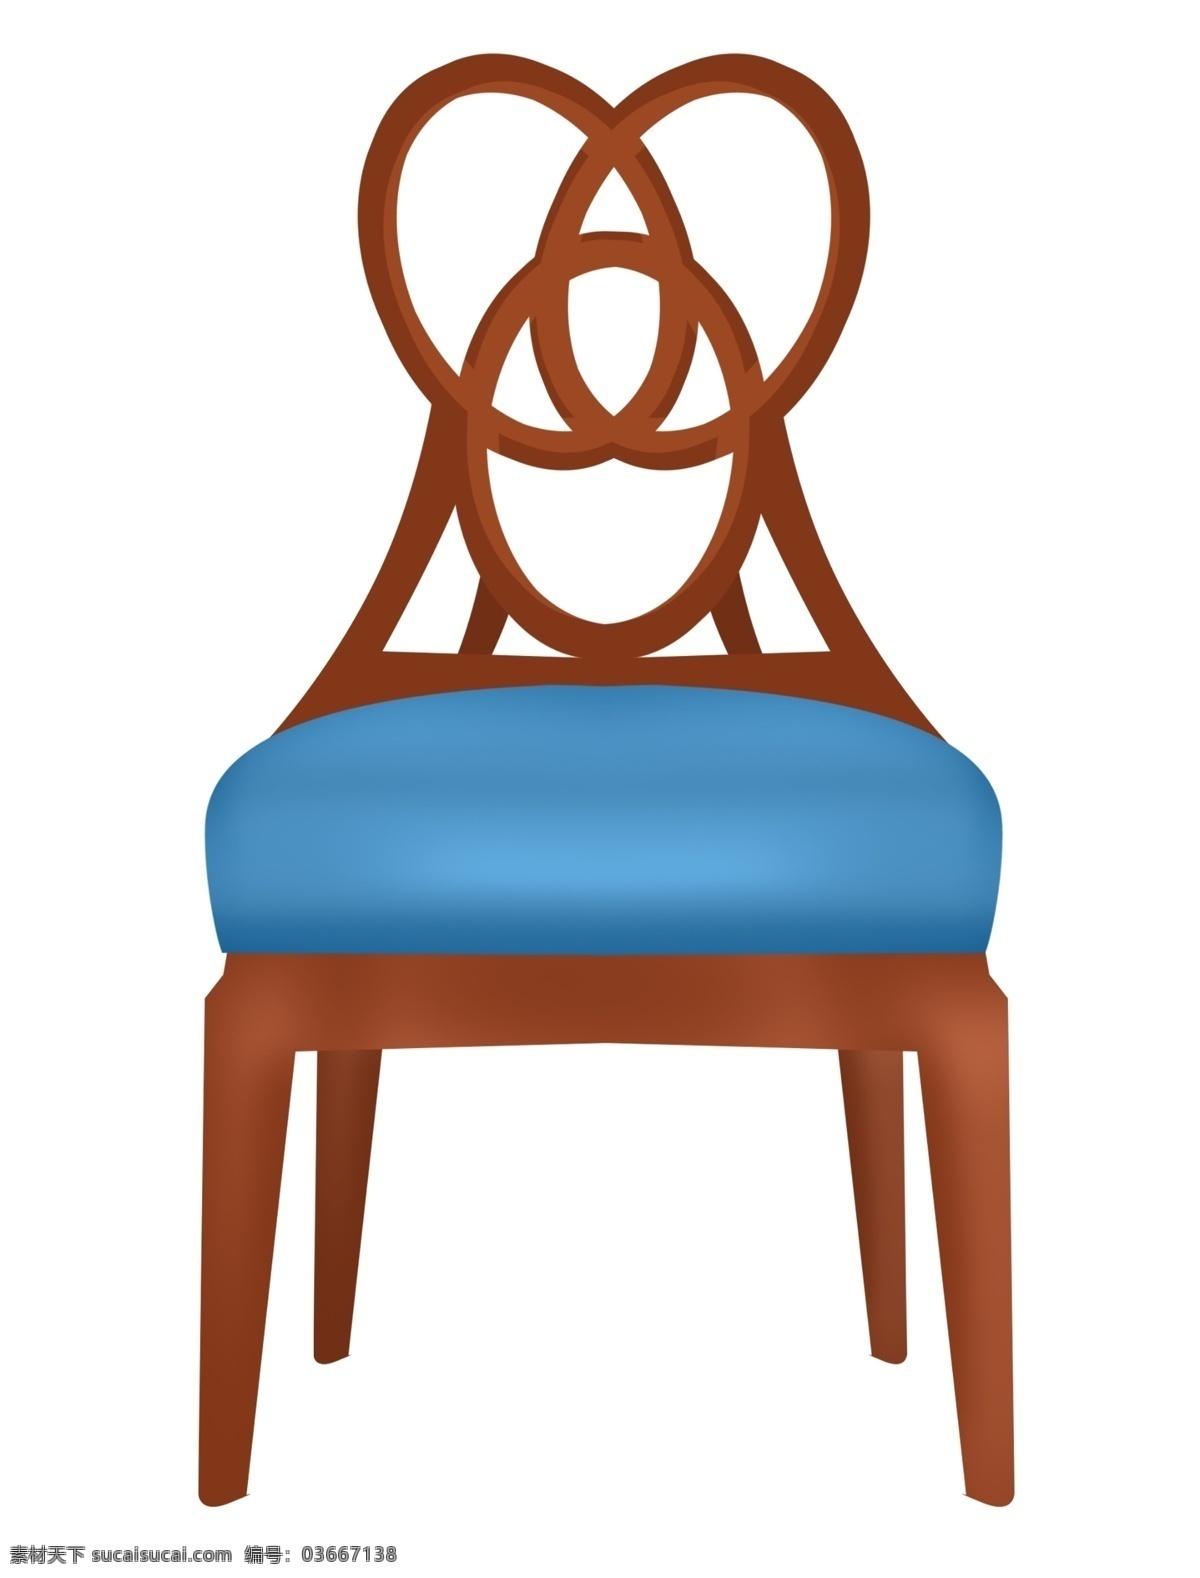 豪华 椅子 装饰 插画 豪华椅子 红色的椅子 蓝色的垫子 漂亮的椅子 椅子装饰 木头椅子 家具椅子